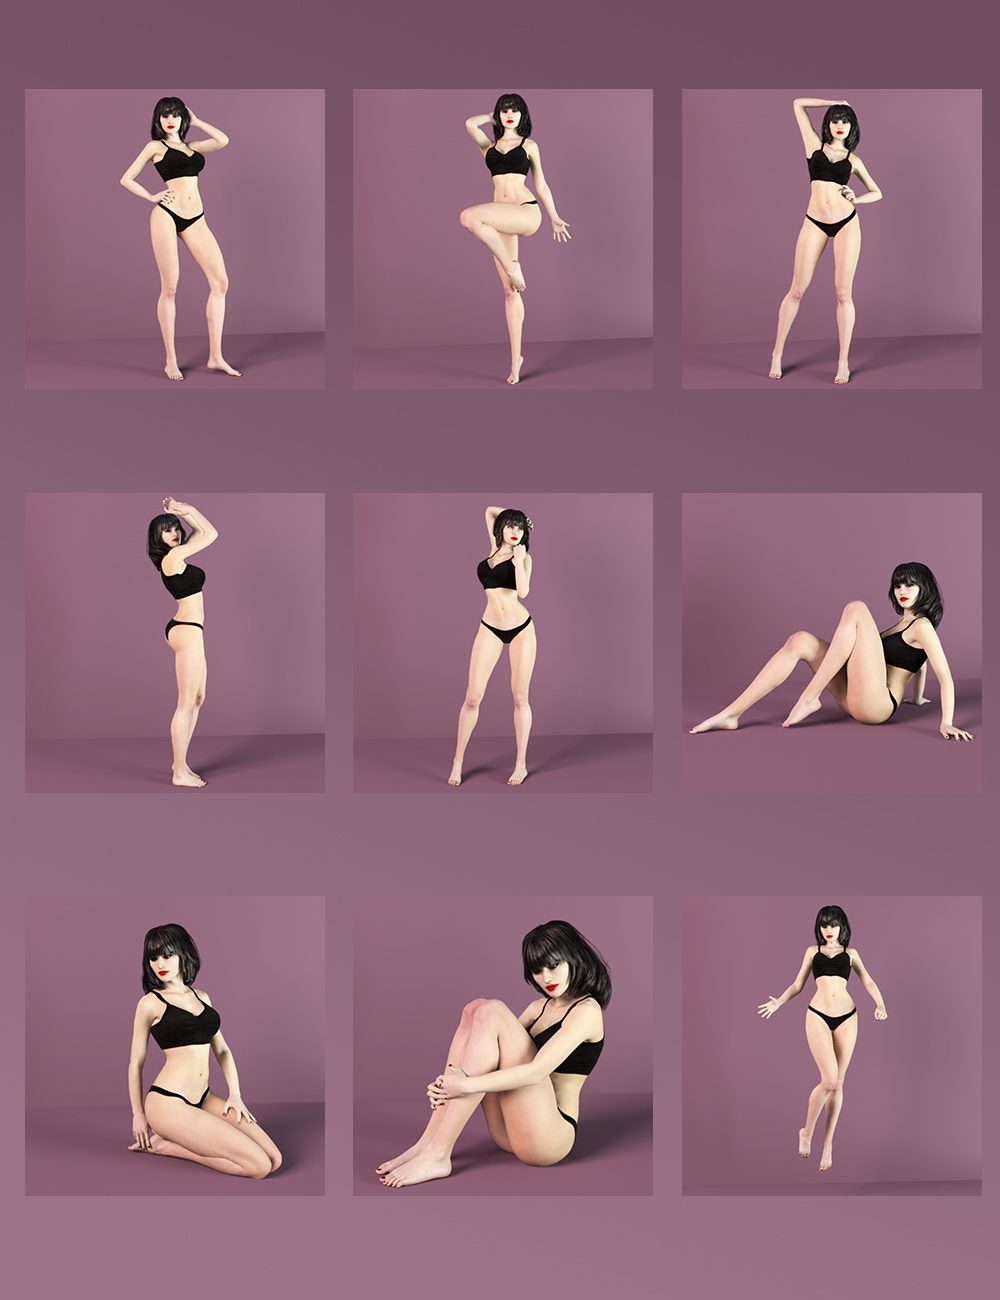 Dark Seduction - Succubus Poses by: Tengu23, 3D Models by Daz 3D